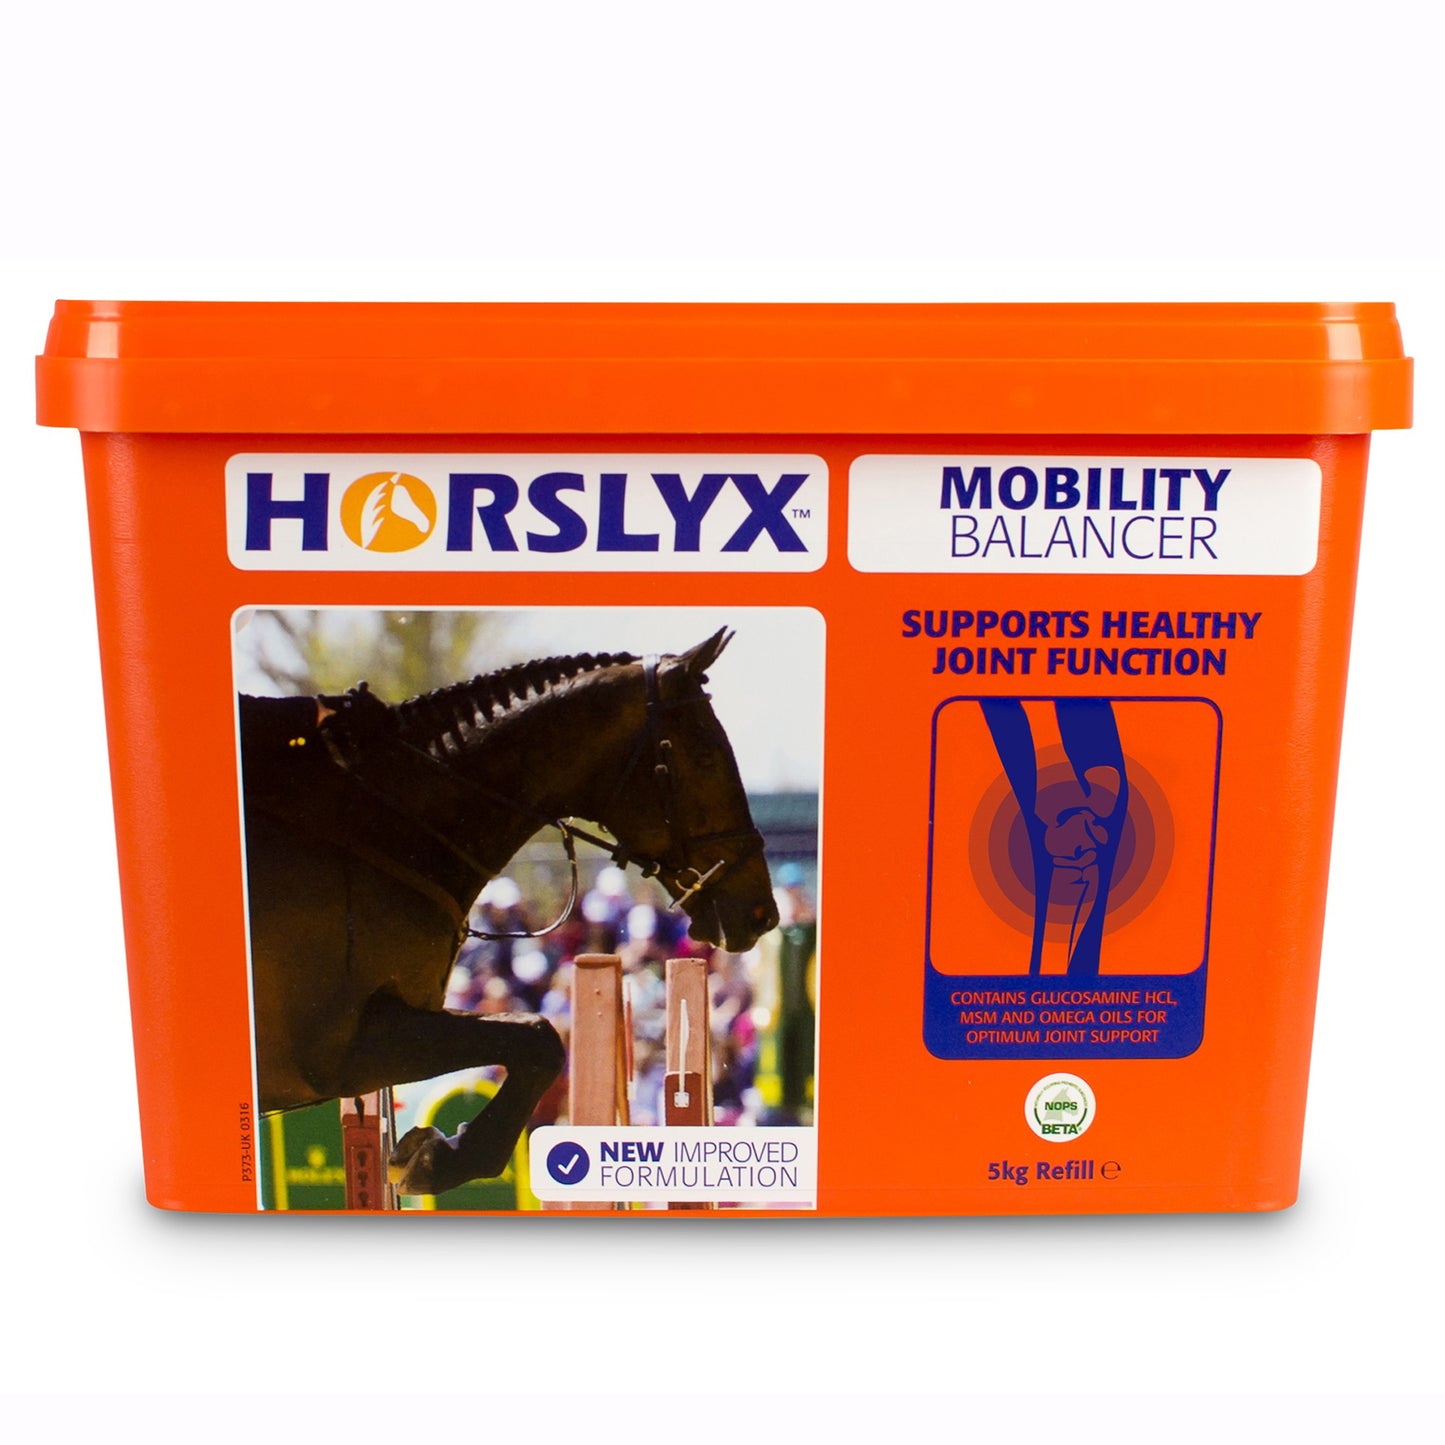 Horslyx 5KG